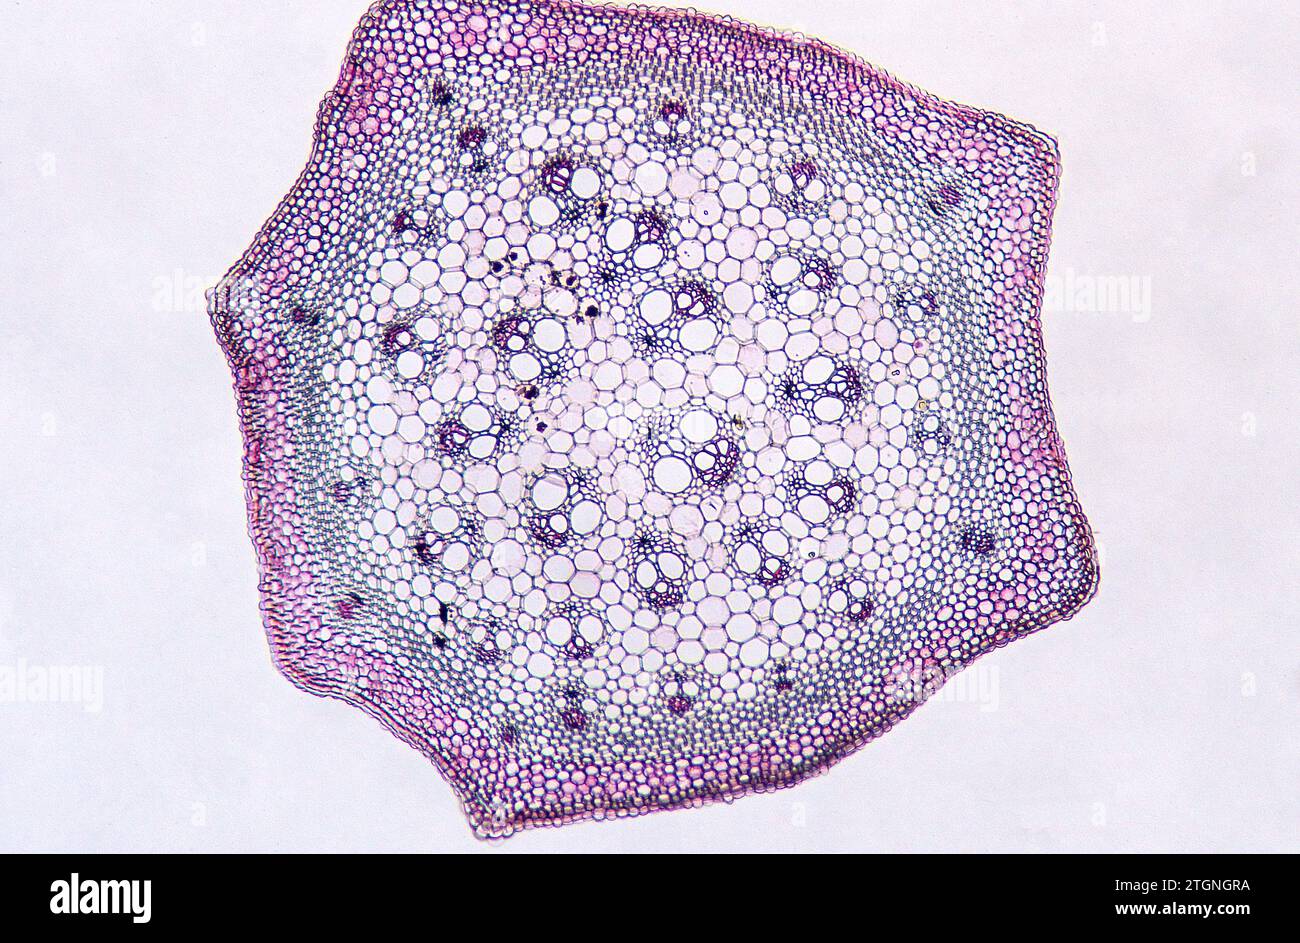 Smilax-Schaftquerschnitt mit Epidermis, vaskulären Bündeln und Parenchym. Monocot Stiel Photomikrograph. Stockfoto